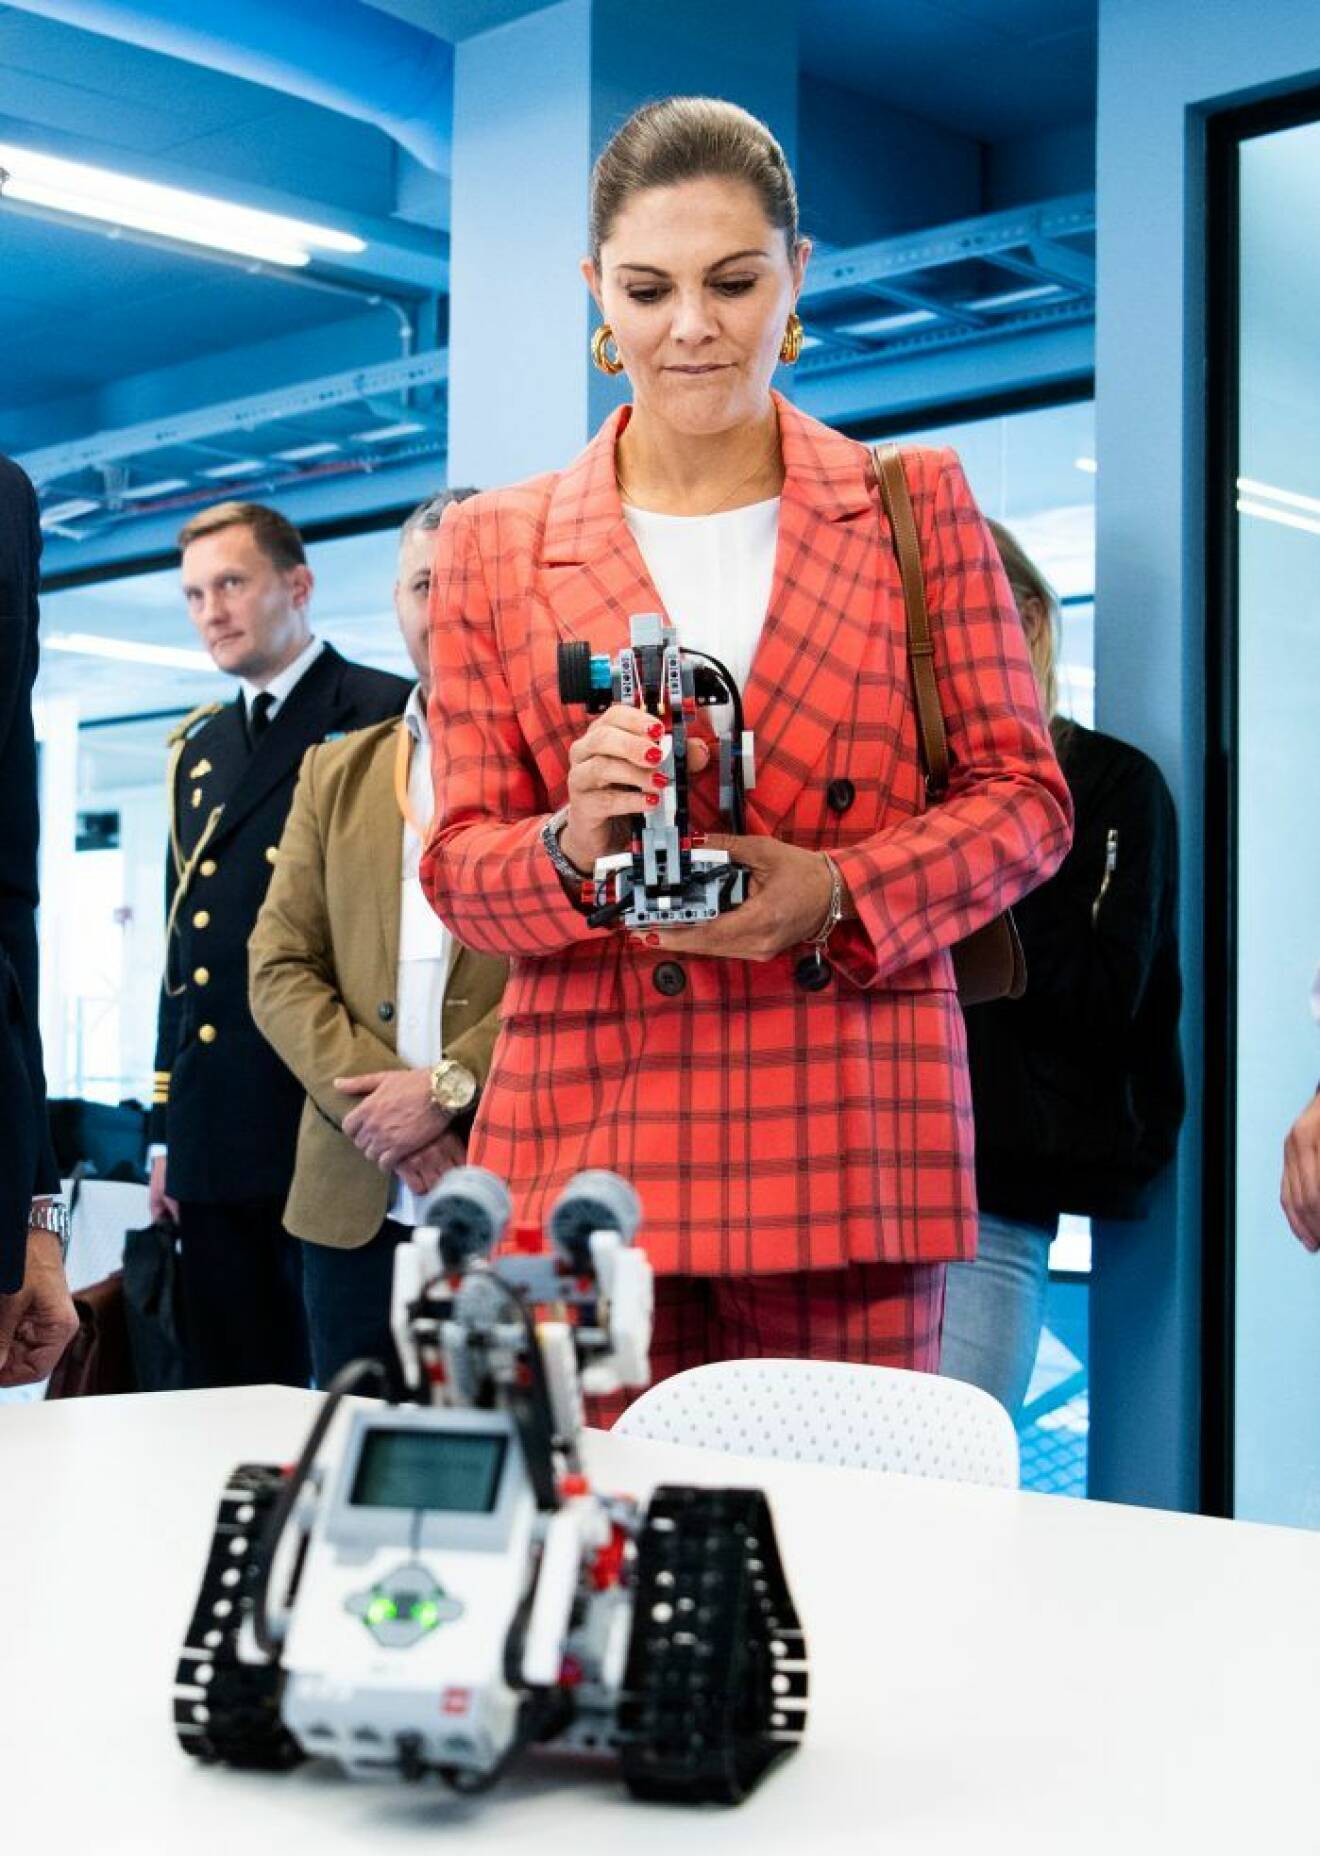 Kronprinsessan Victoria prins Daniel testar att köra robot under ett arbetsuppdrag.